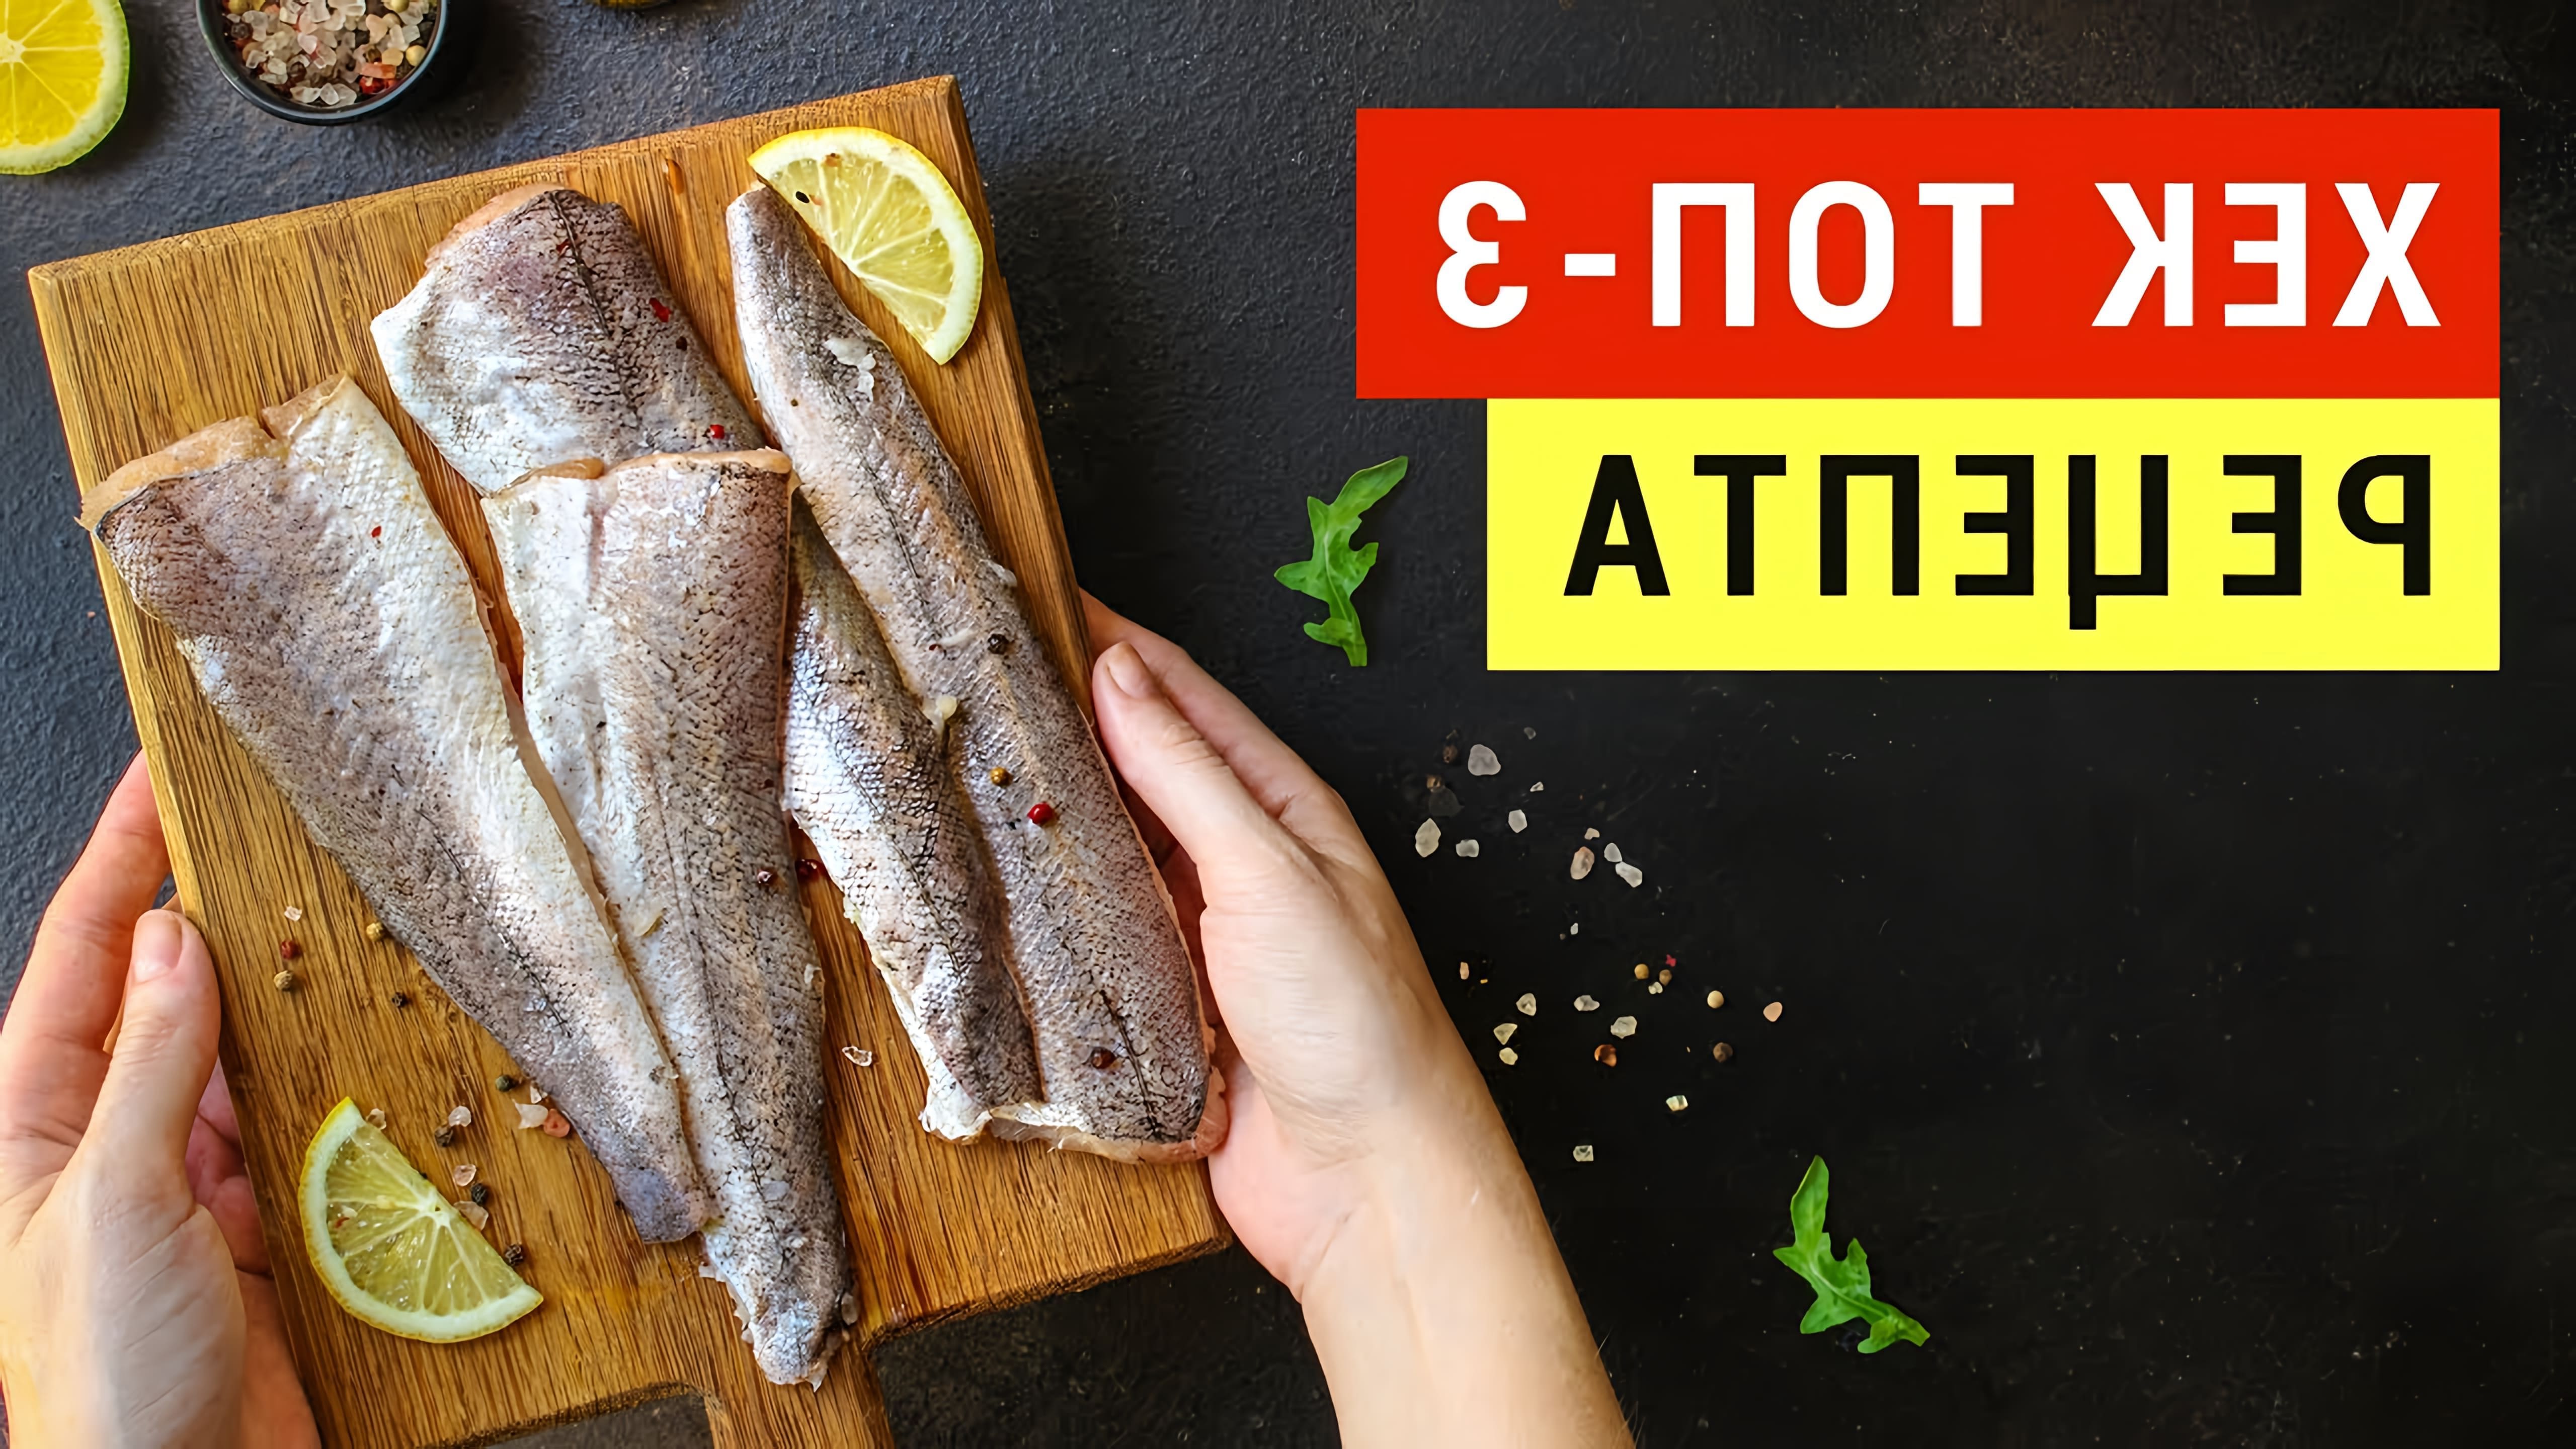 В этом видео Виктория Субботина показывает, как приготовить блюда из хека, диетической рыбы, которая содержит мало жиров и является отличным источником белка